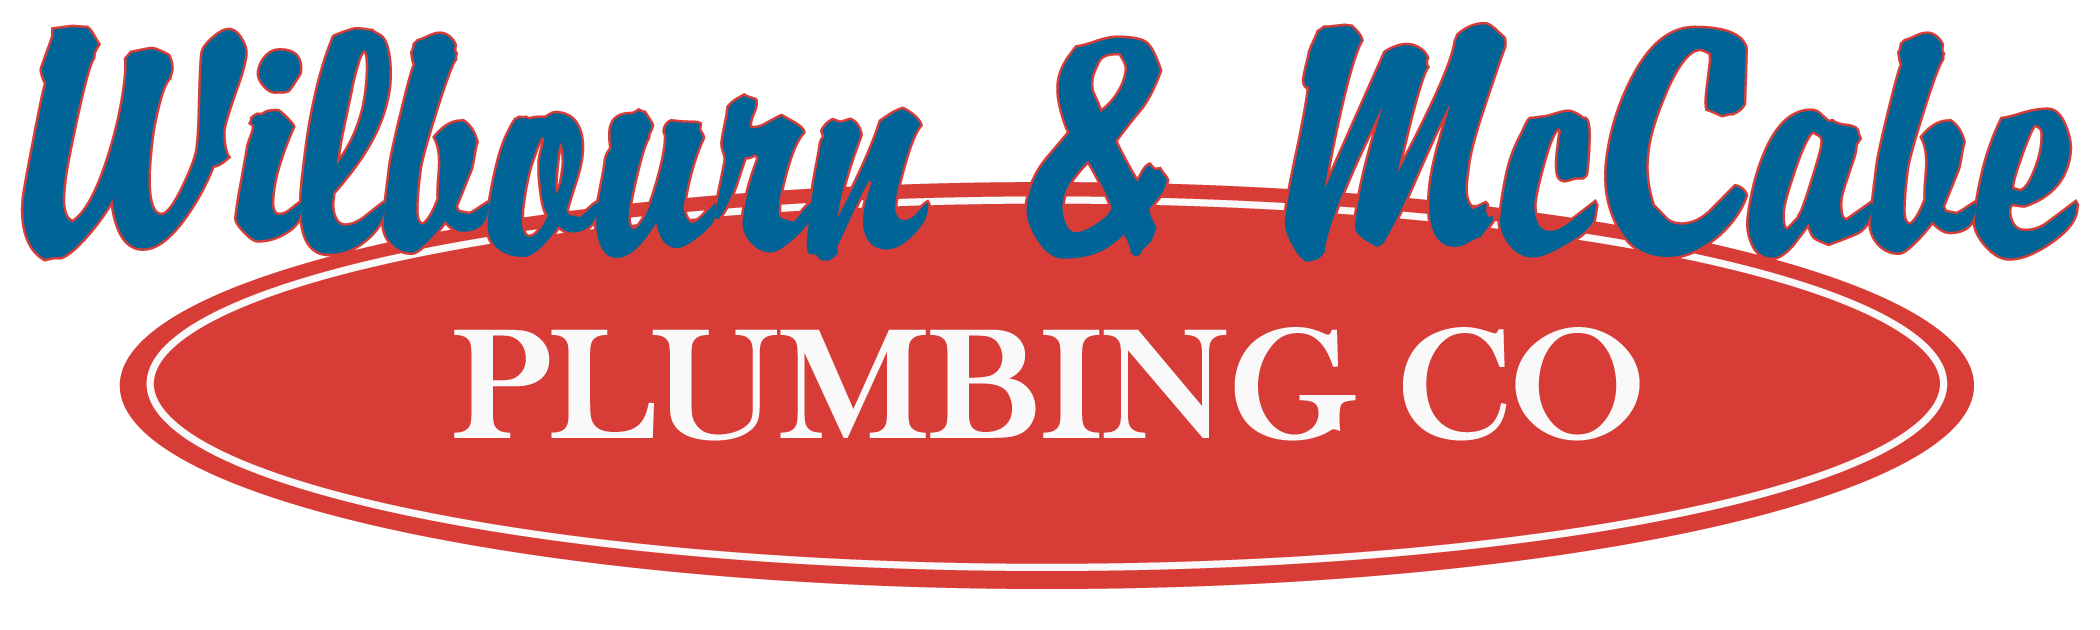 Wilbourn McCabe plumbing logo